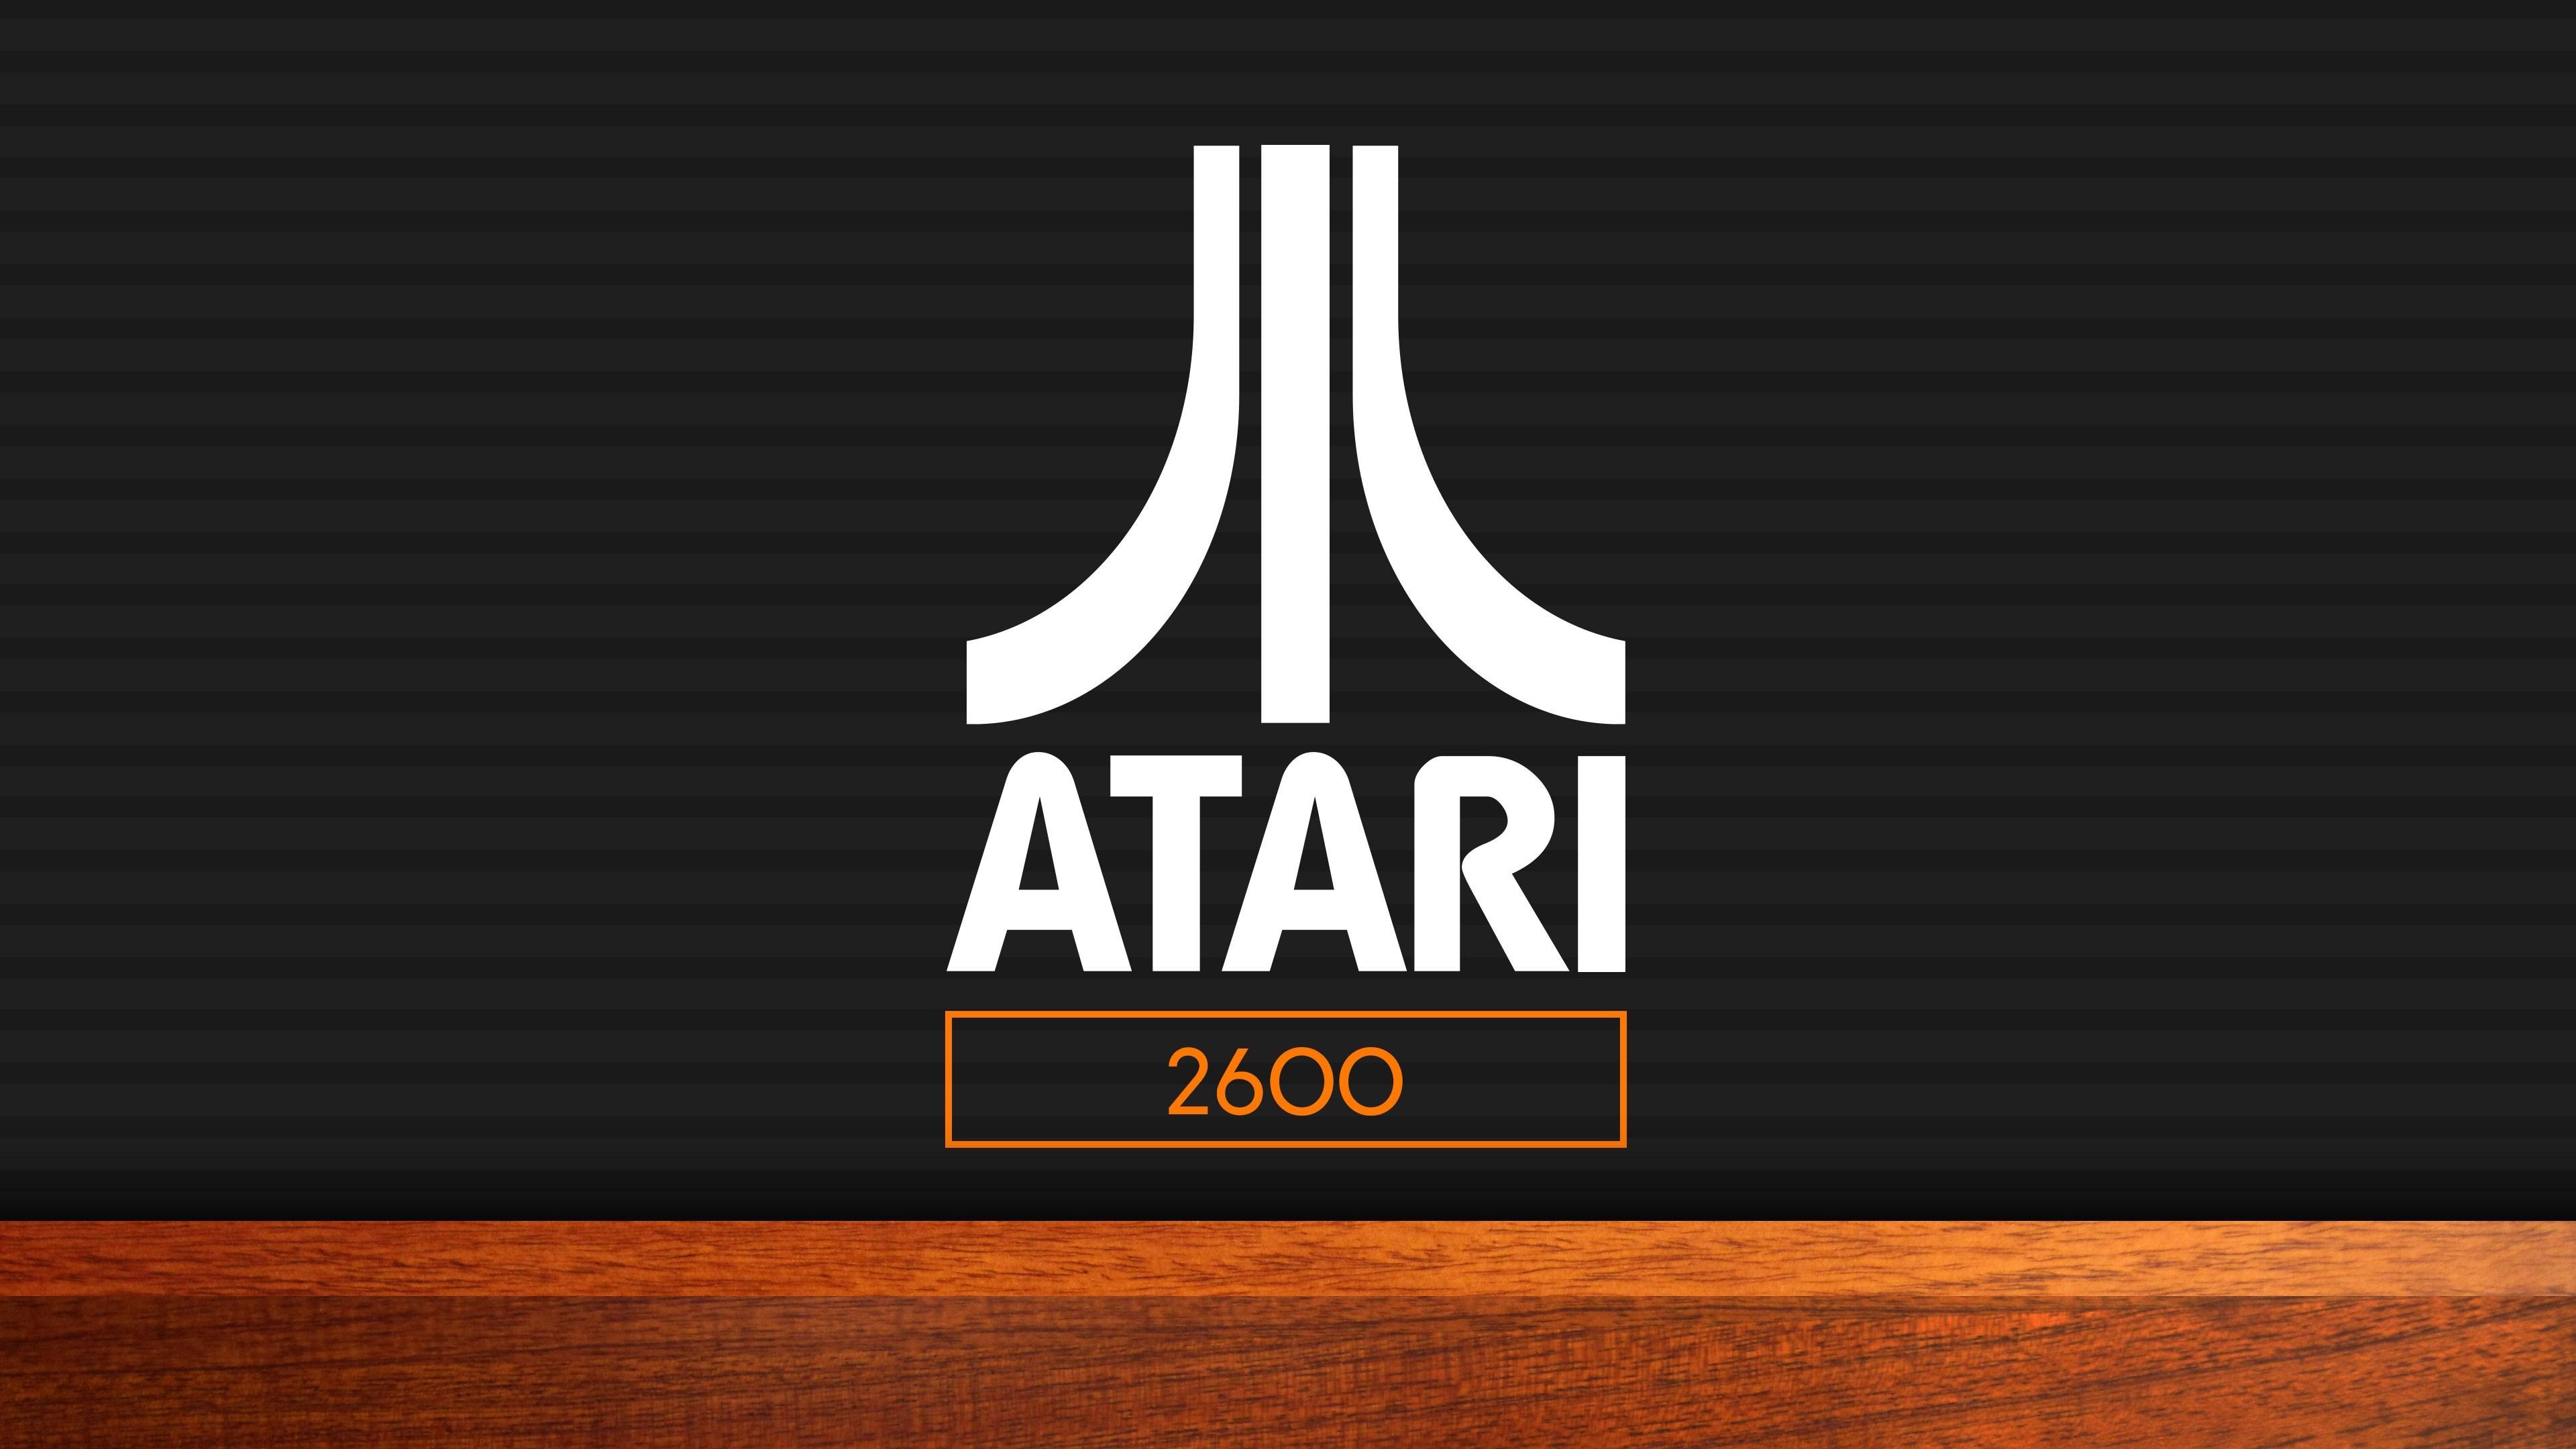 Atari Wallpaper (the best image in 2018)